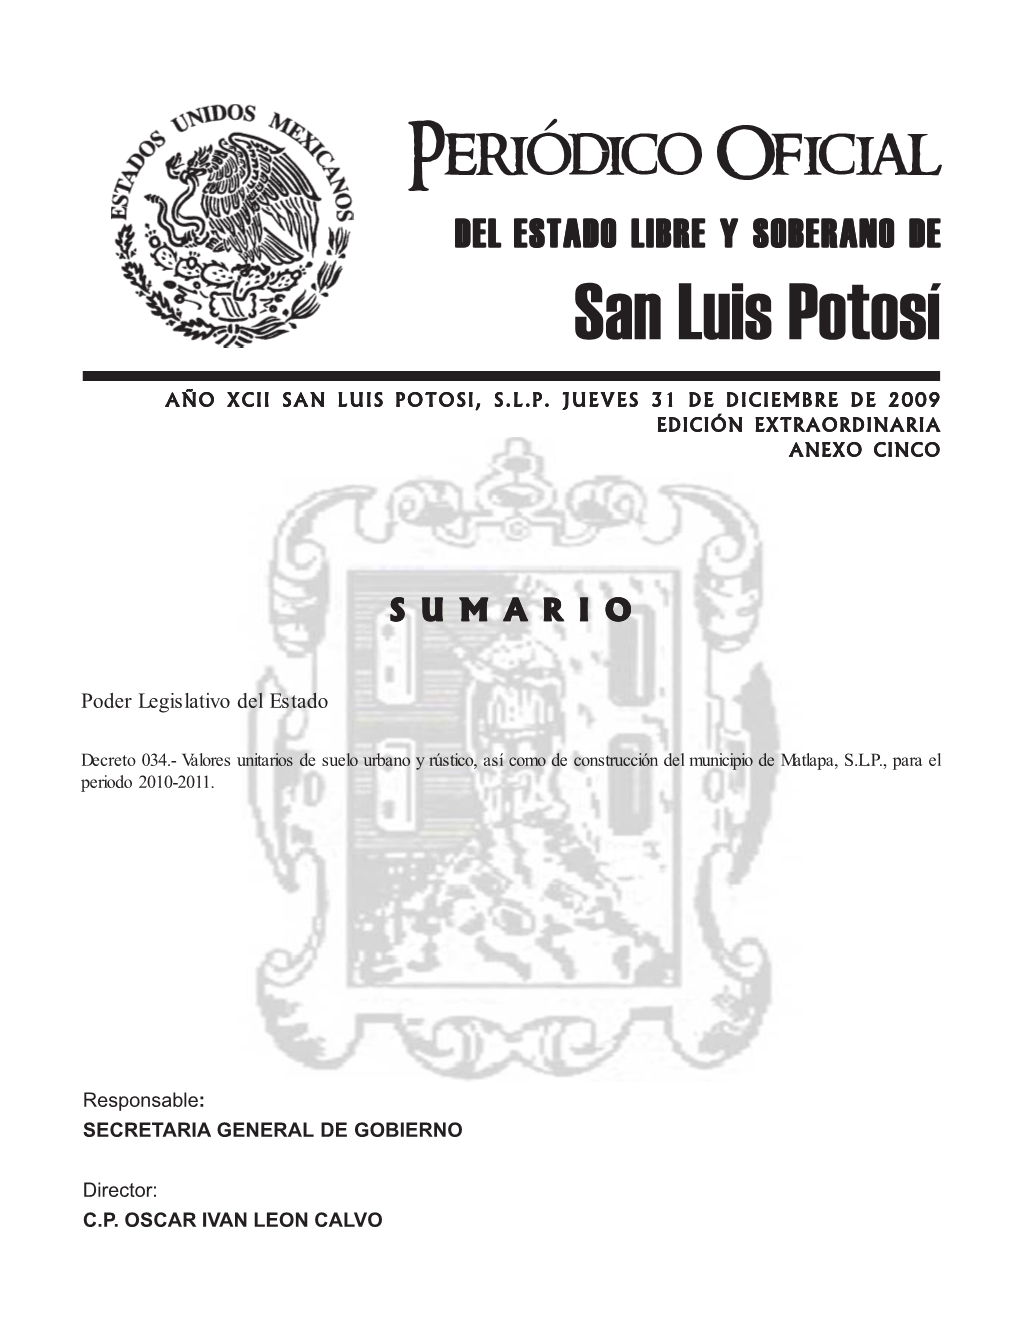 Matlapa, S.L.P., Para El Periodo 2010-2011